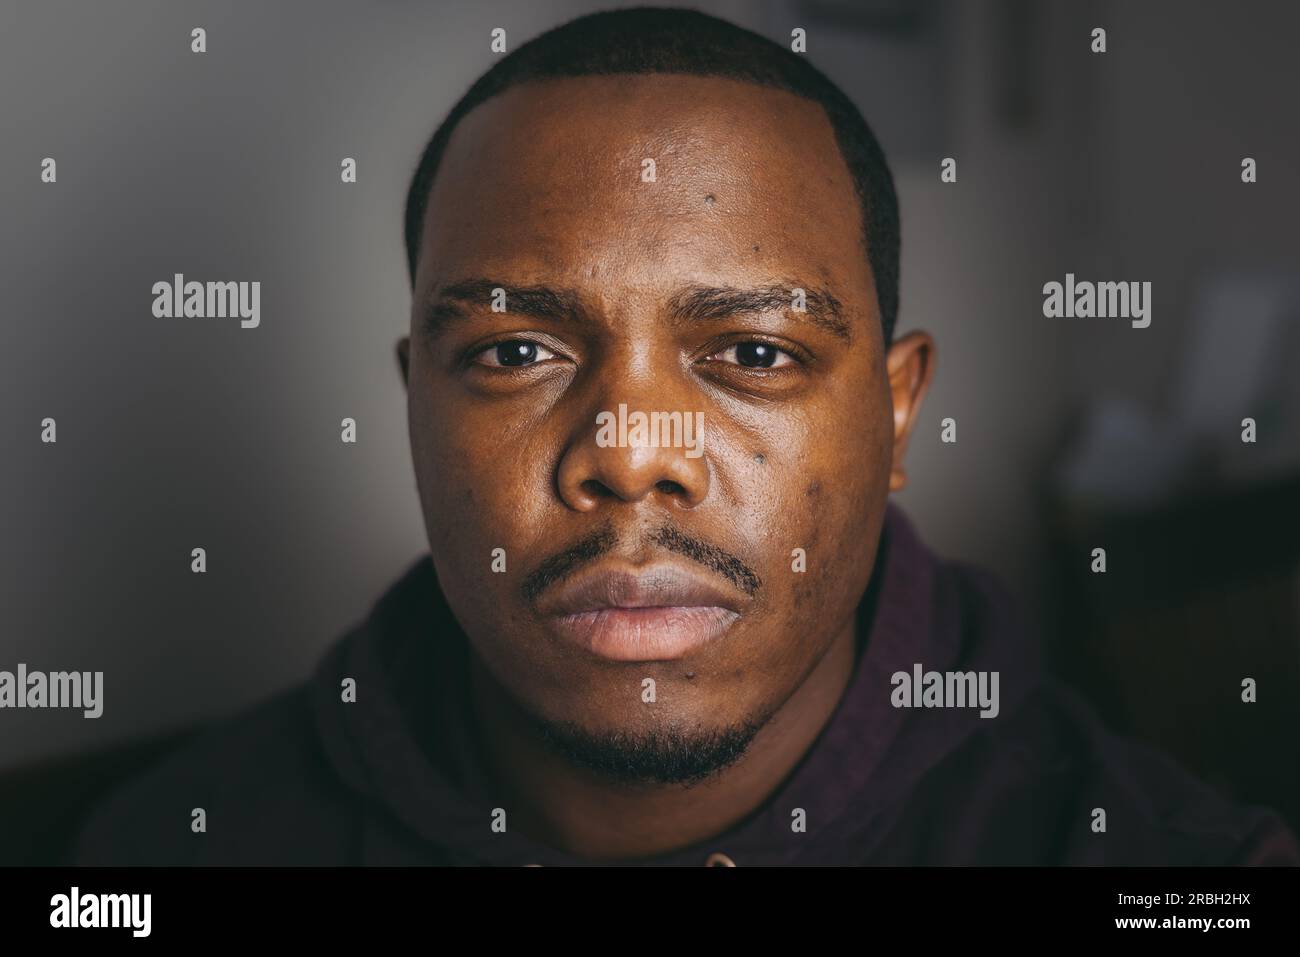 jeune homme afro-américain regardant dans la caméra Banque D'Images